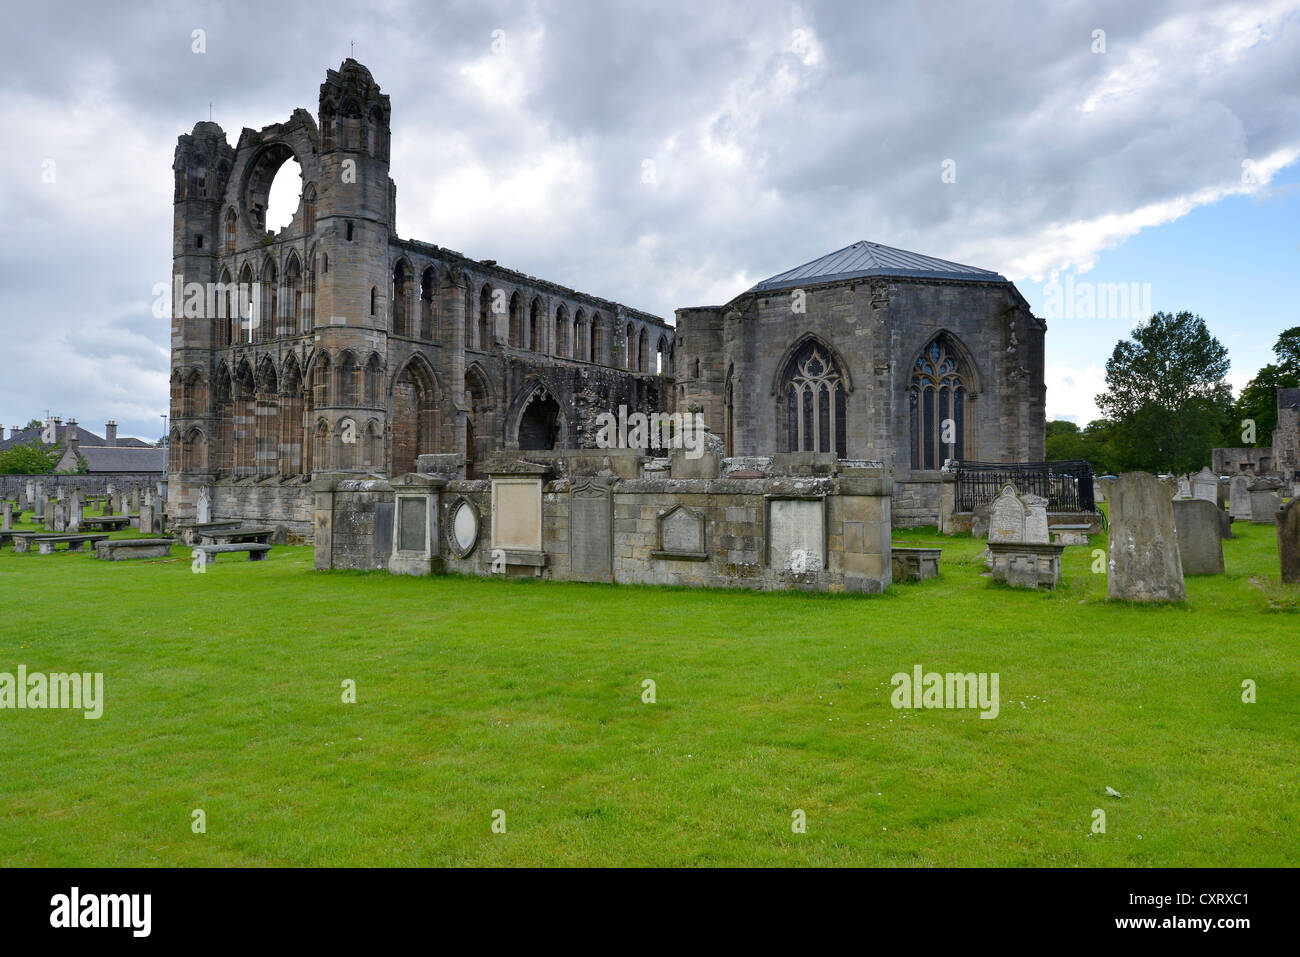 Durante la riforma, una volta la più grande cattedrale in Scozia è stata distrutta, Elgin, Gaelico: Eilginn Muireibh, murene, Scozia Foto Stock